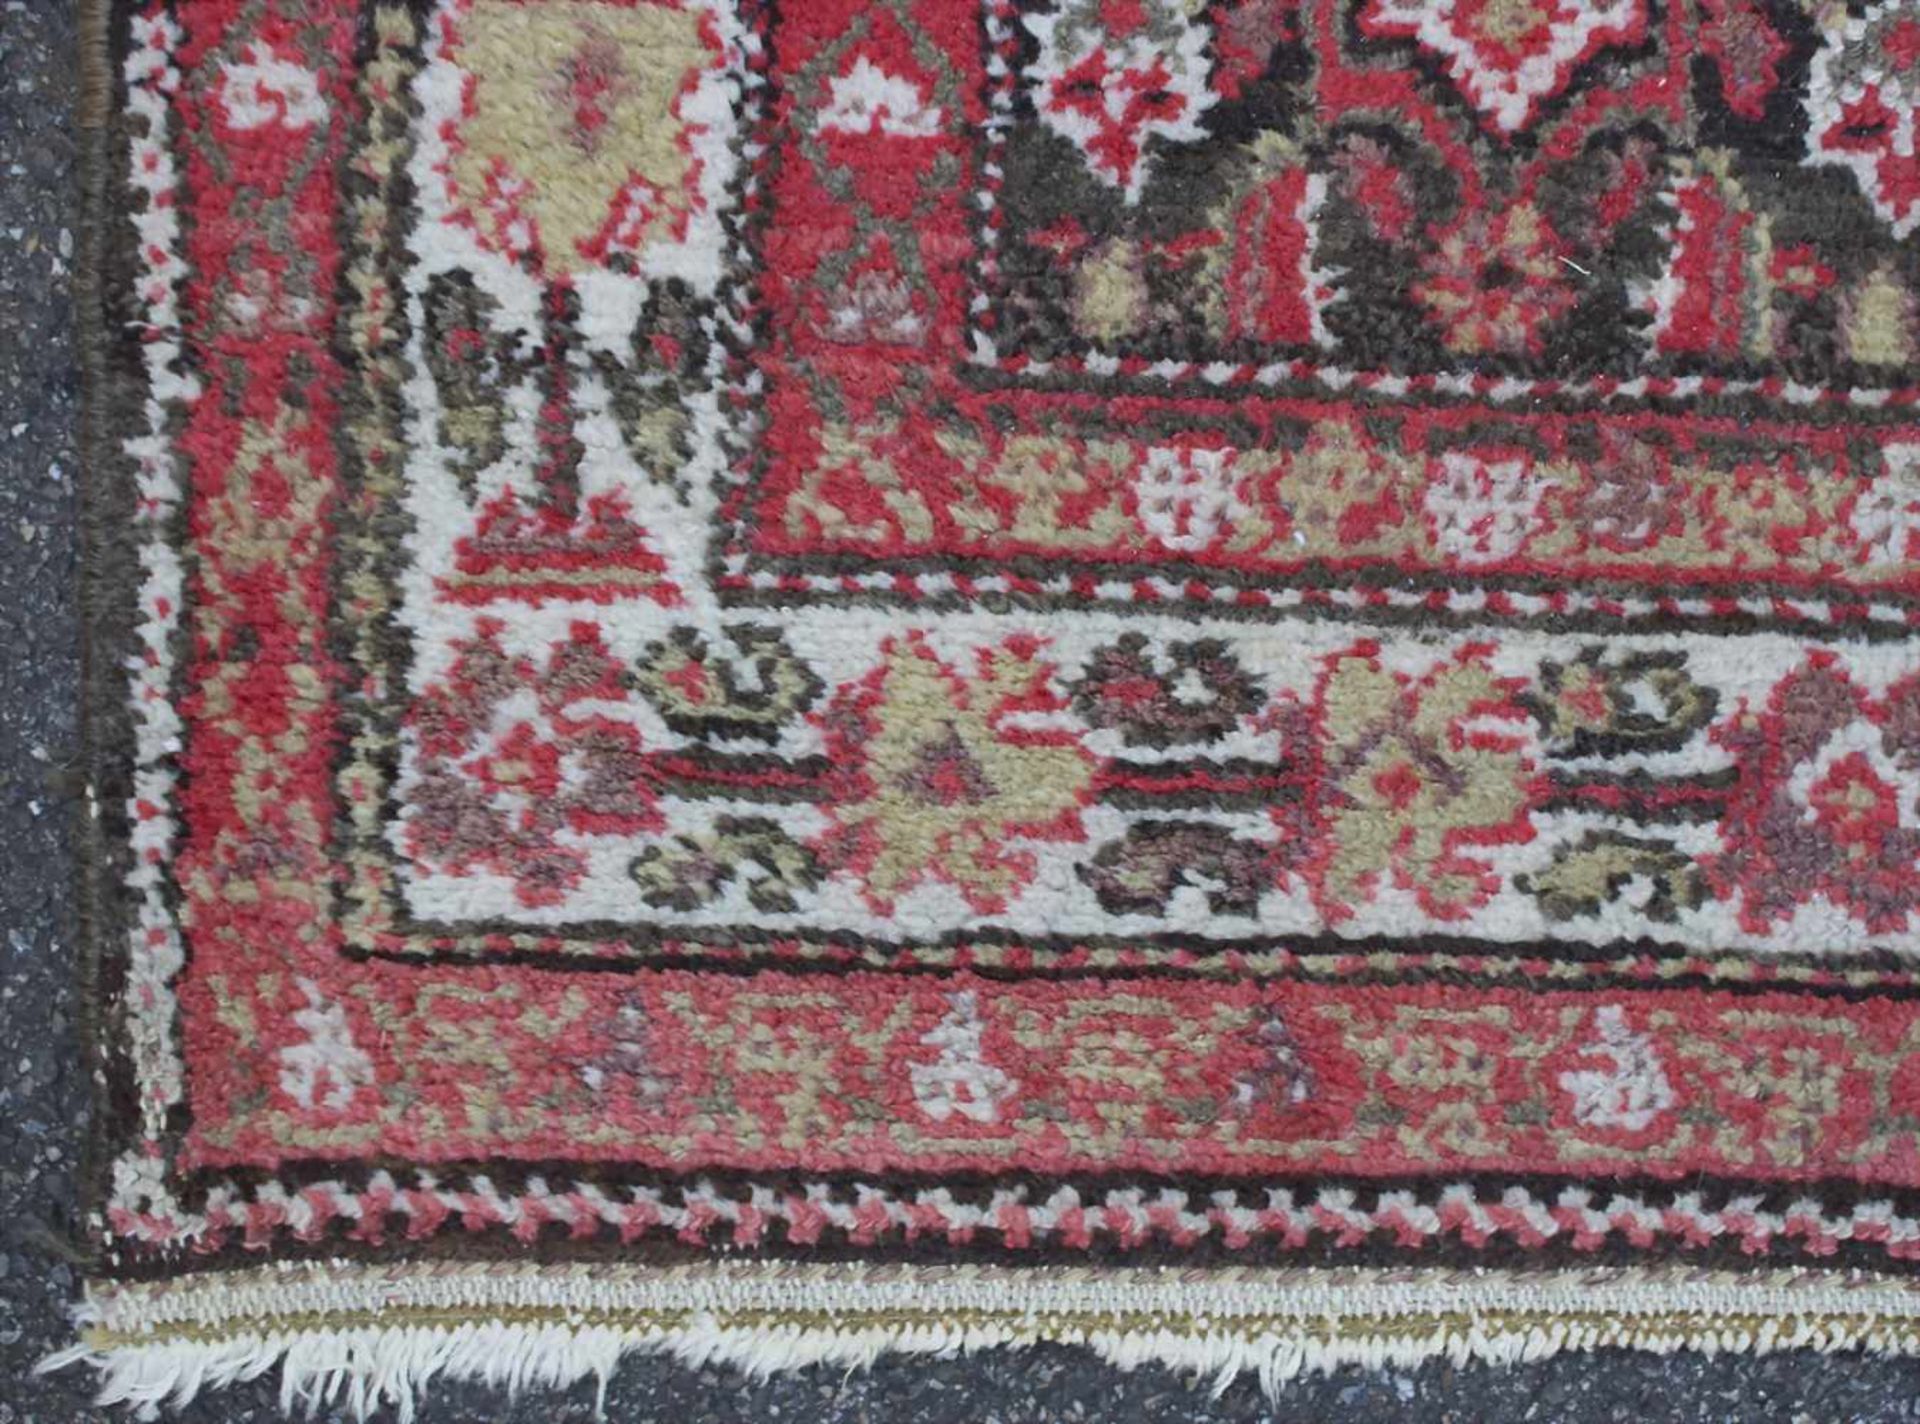 Orientteppich / An oriental carpetMaterial: Wolle auf Wolle, Maße: 192 x 132 cm, Zustand: partiell - Bild 2 aus 4